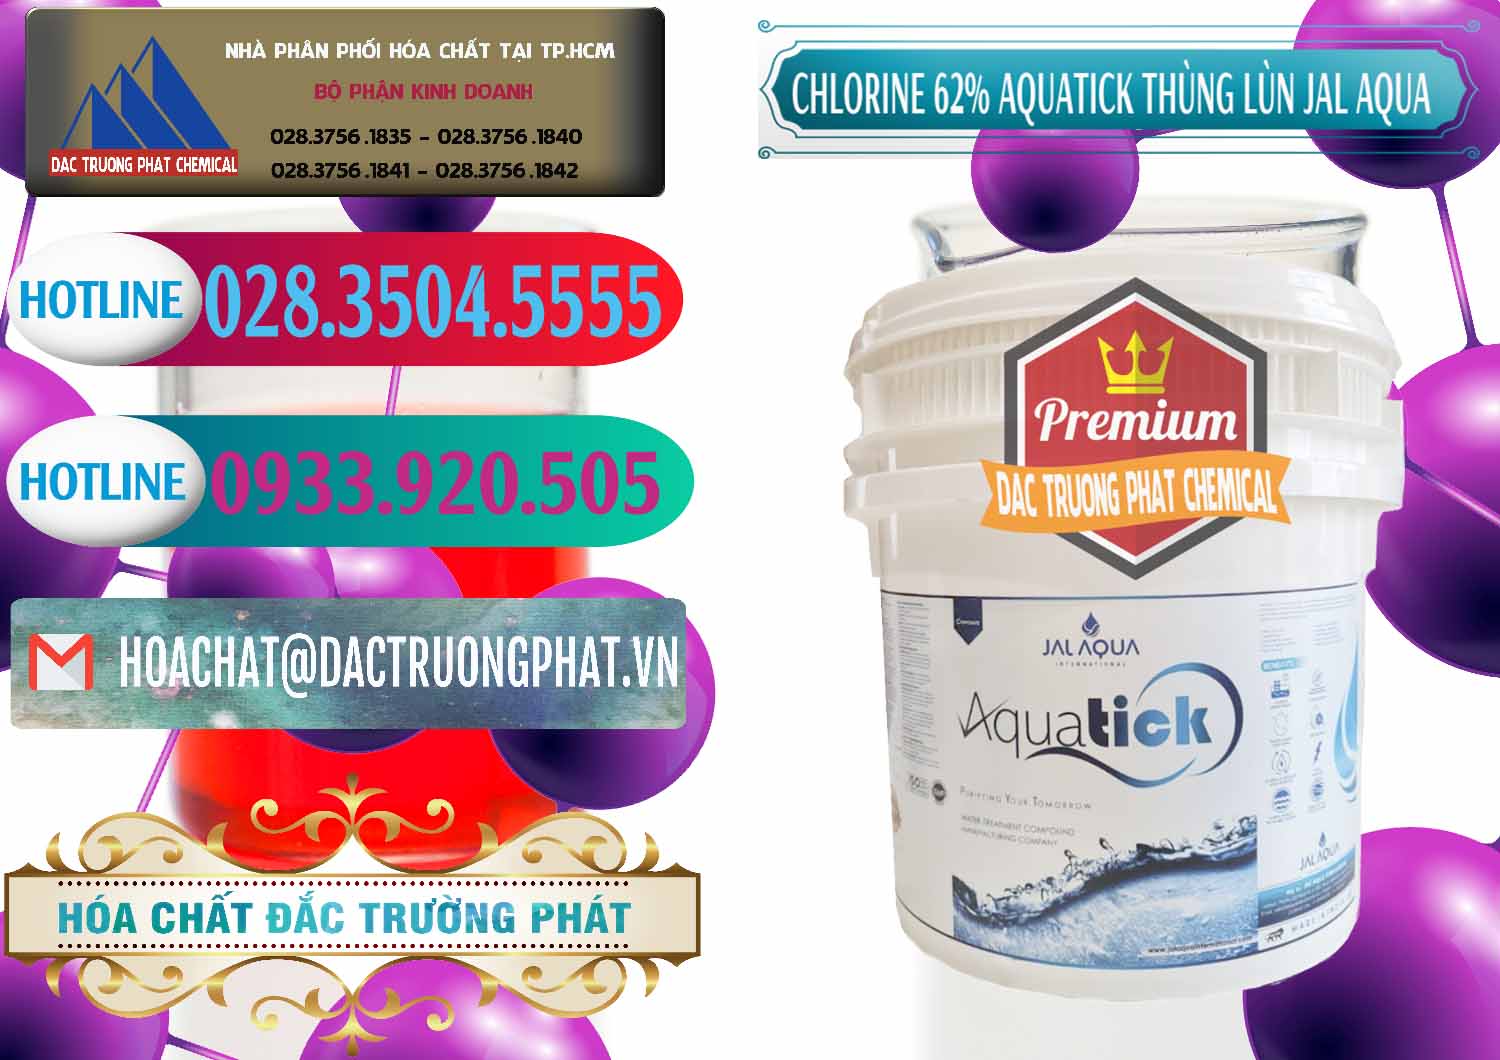 Công ty bán ( cung ứng ) Chlorine – Clorin 62% Aquatick Thùng Lùn Jal Aqua Ấn Độ India - 0238 - Chuyên phân phối ( bán ) hóa chất tại TP.HCM - truongphat.vn